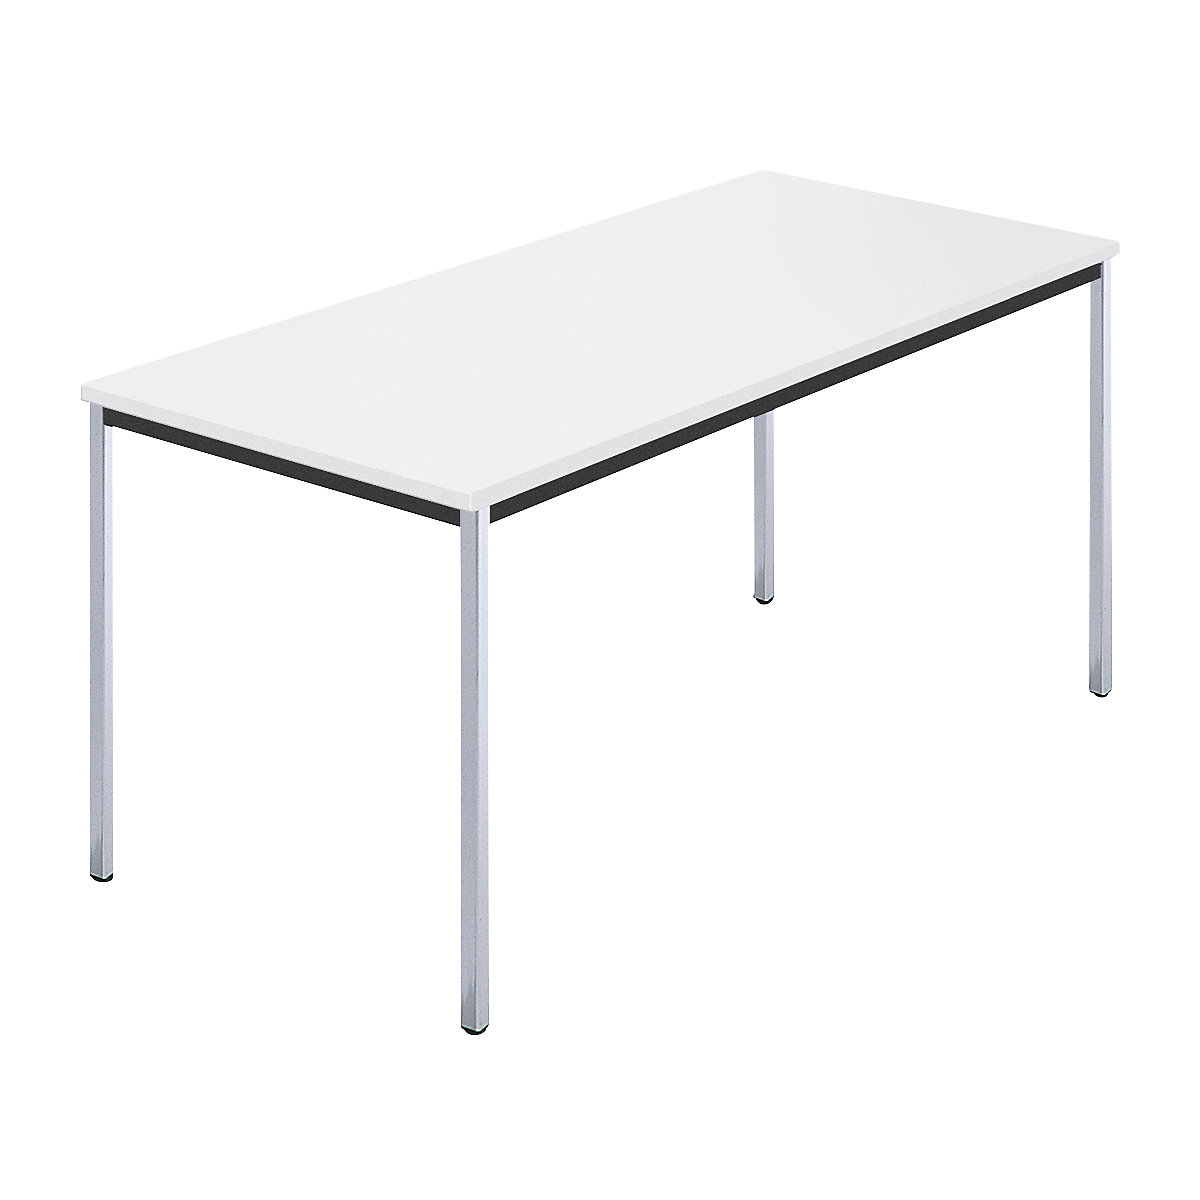 Tables rectangulaires, tube carré chromé, l x p 1500 x 800 mm, blanc-5